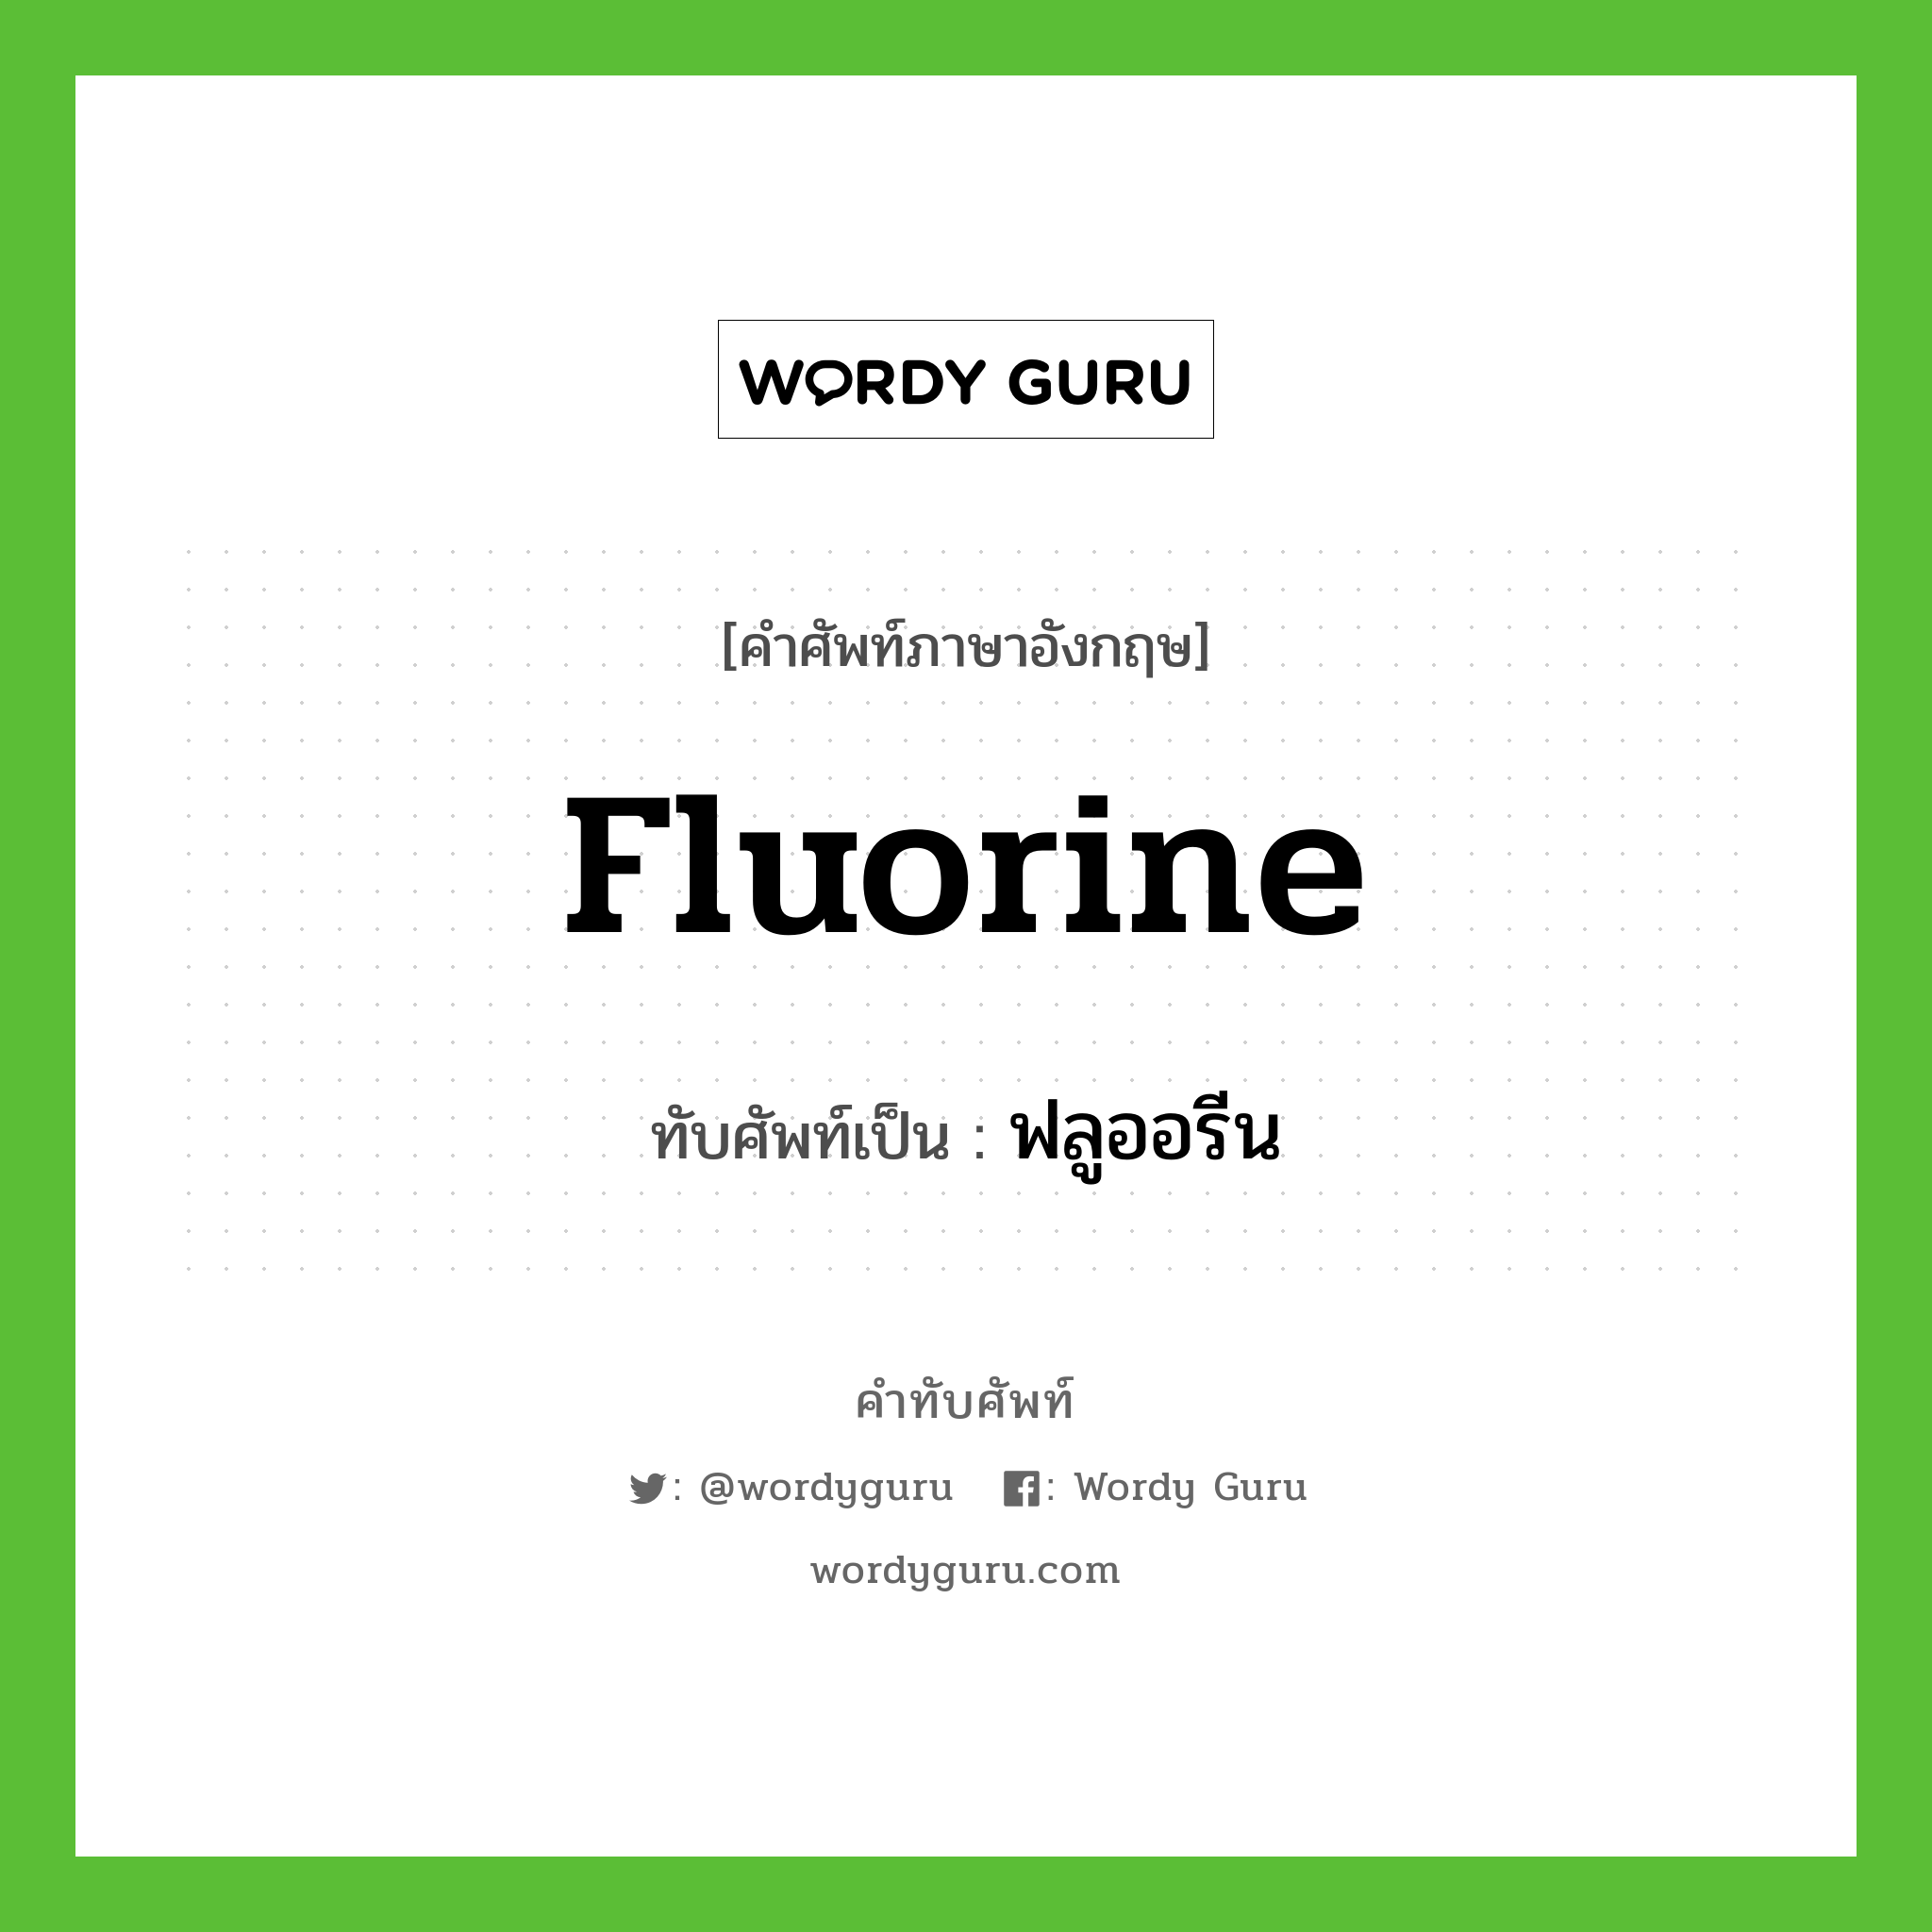 fluorine เขียนเป็นคำไทยว่าอะไร?, คำศัพท์ภาษาอังกฤษ fluorine ทับศัพท์เป็น ฟลูออรีน